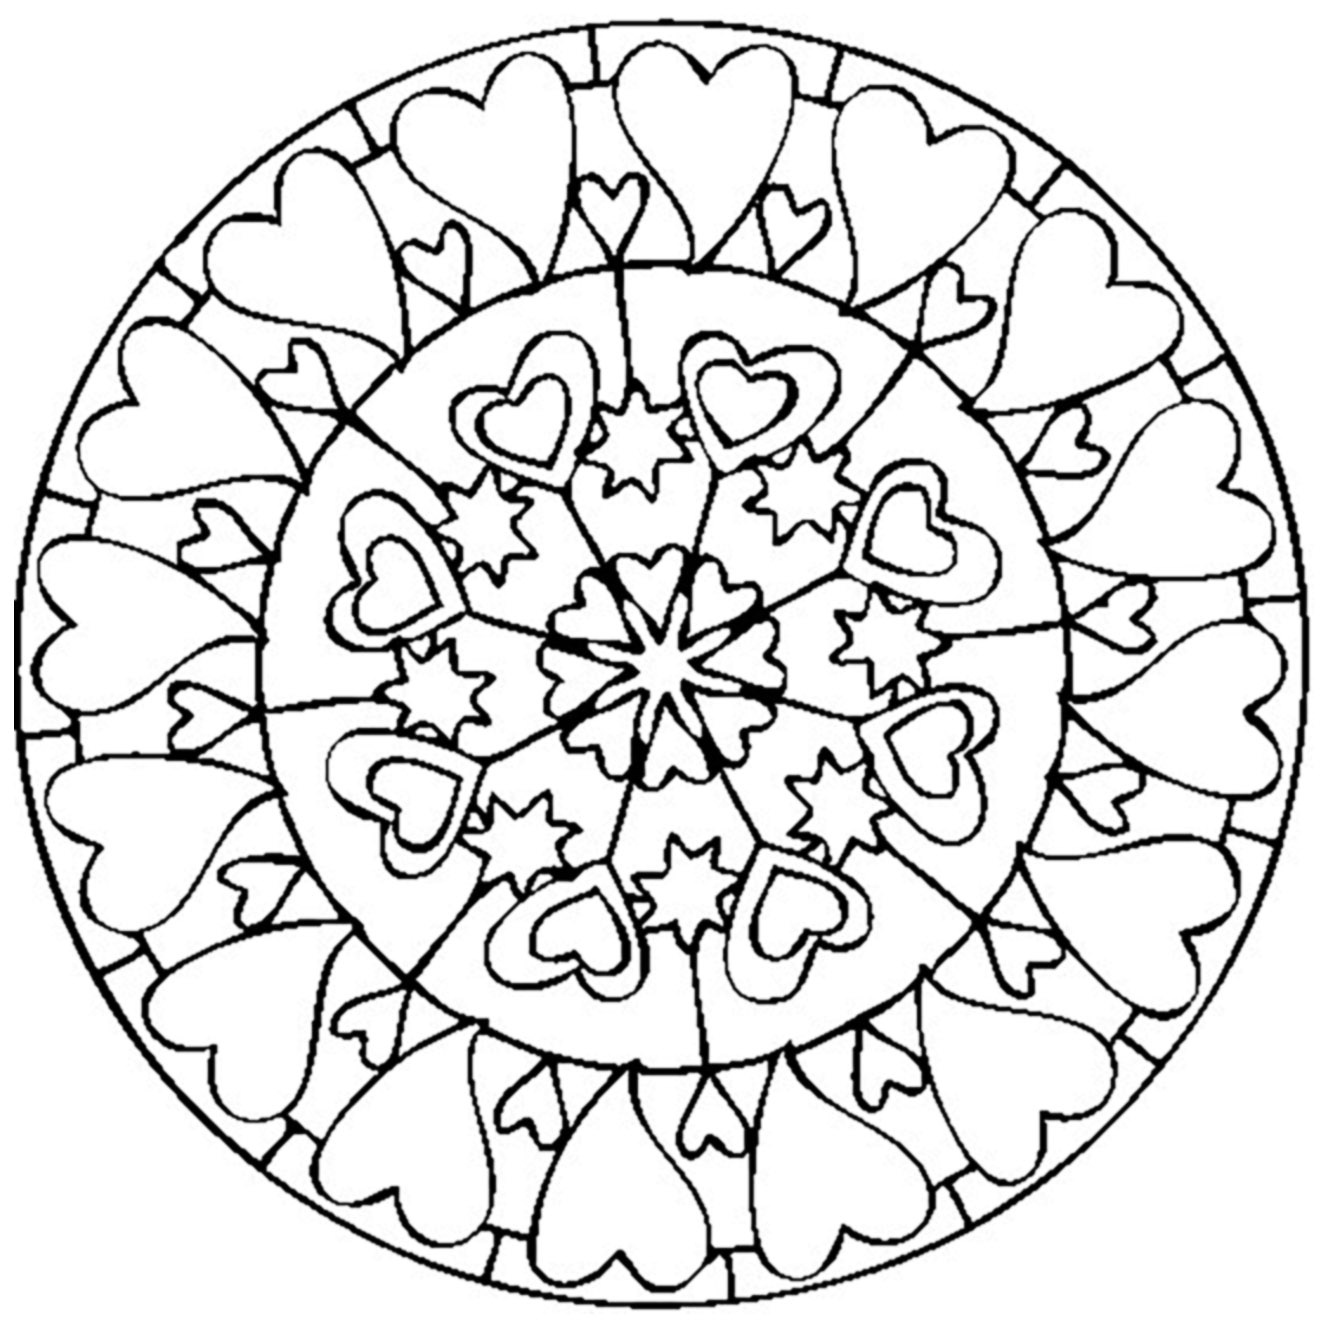 Peu de détails à colorier dans ce Mandala assez simple composé de coeurs, qui conviendra aux enfants et aux adultes qui recherchent de la simplicité.